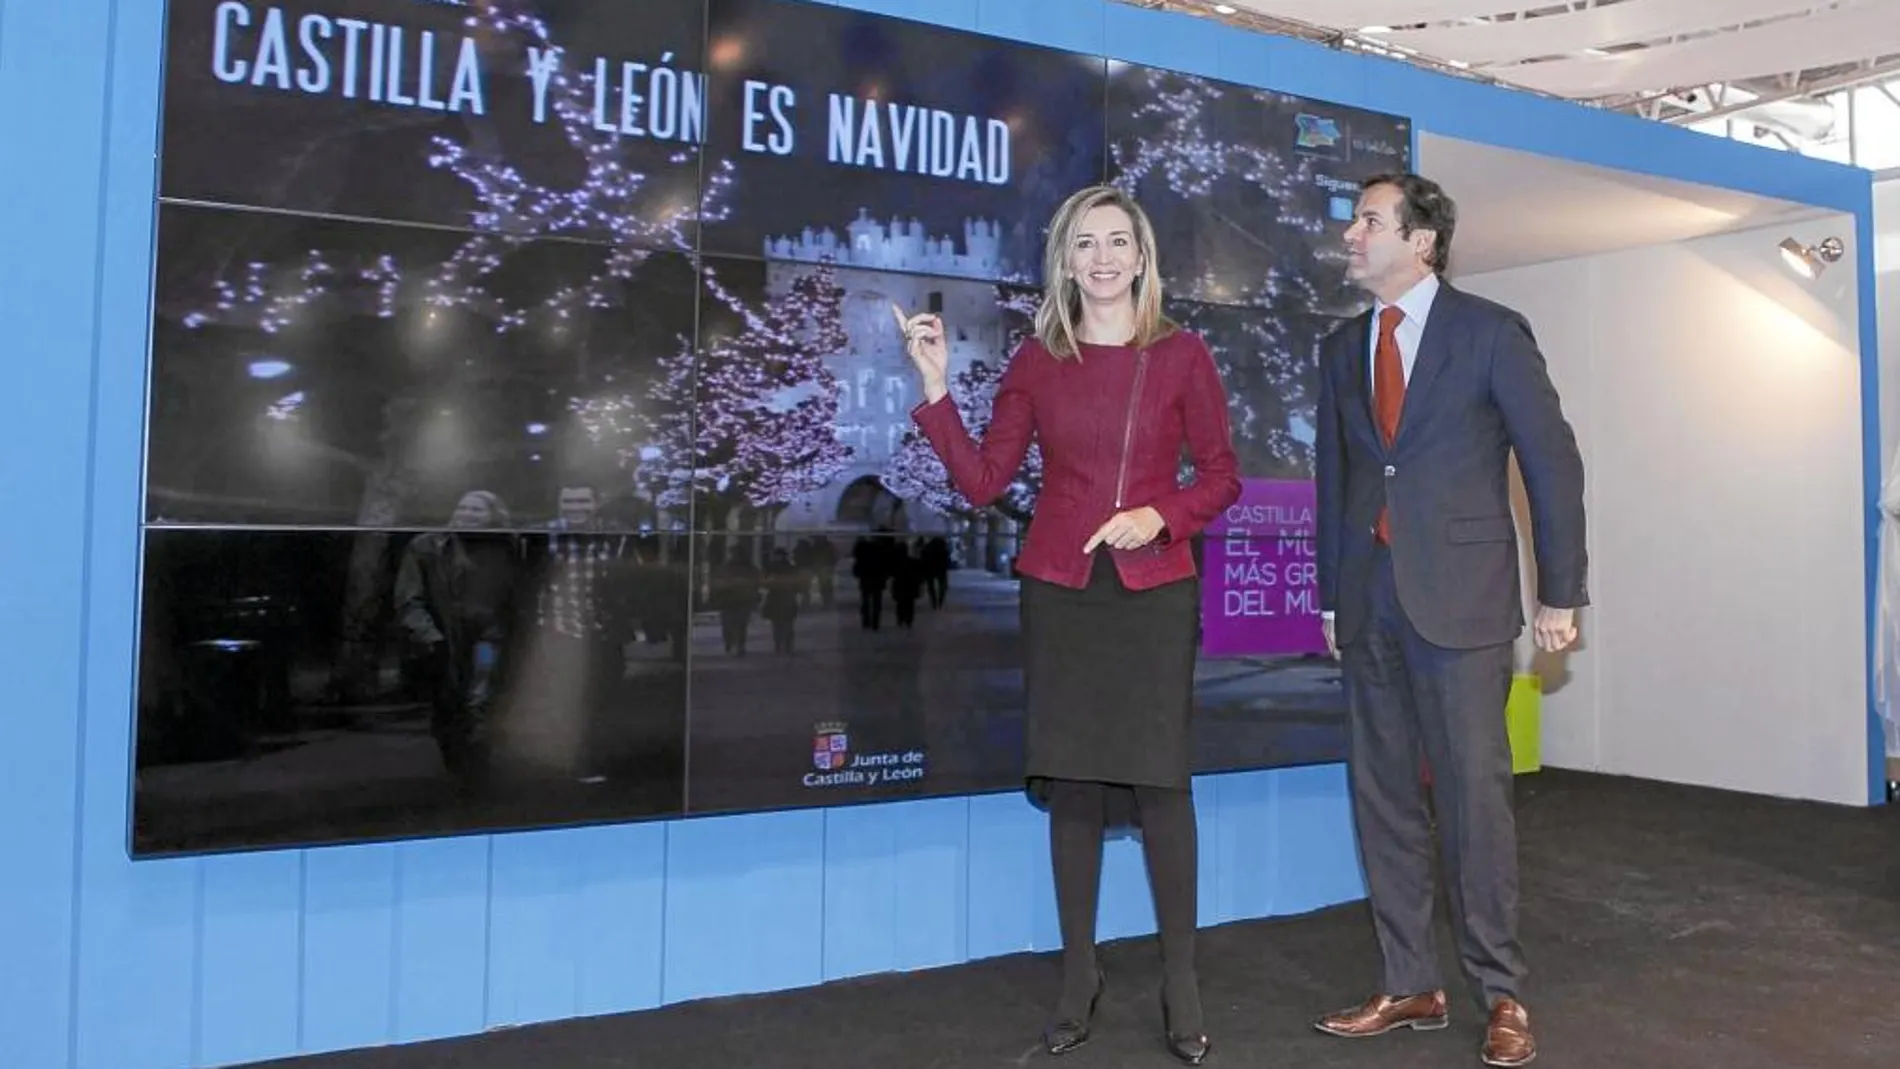 La consejera de Cultura y Turismo, Alicia García, presenta la campaña junto al director general de Turismo, Javier Ramírez